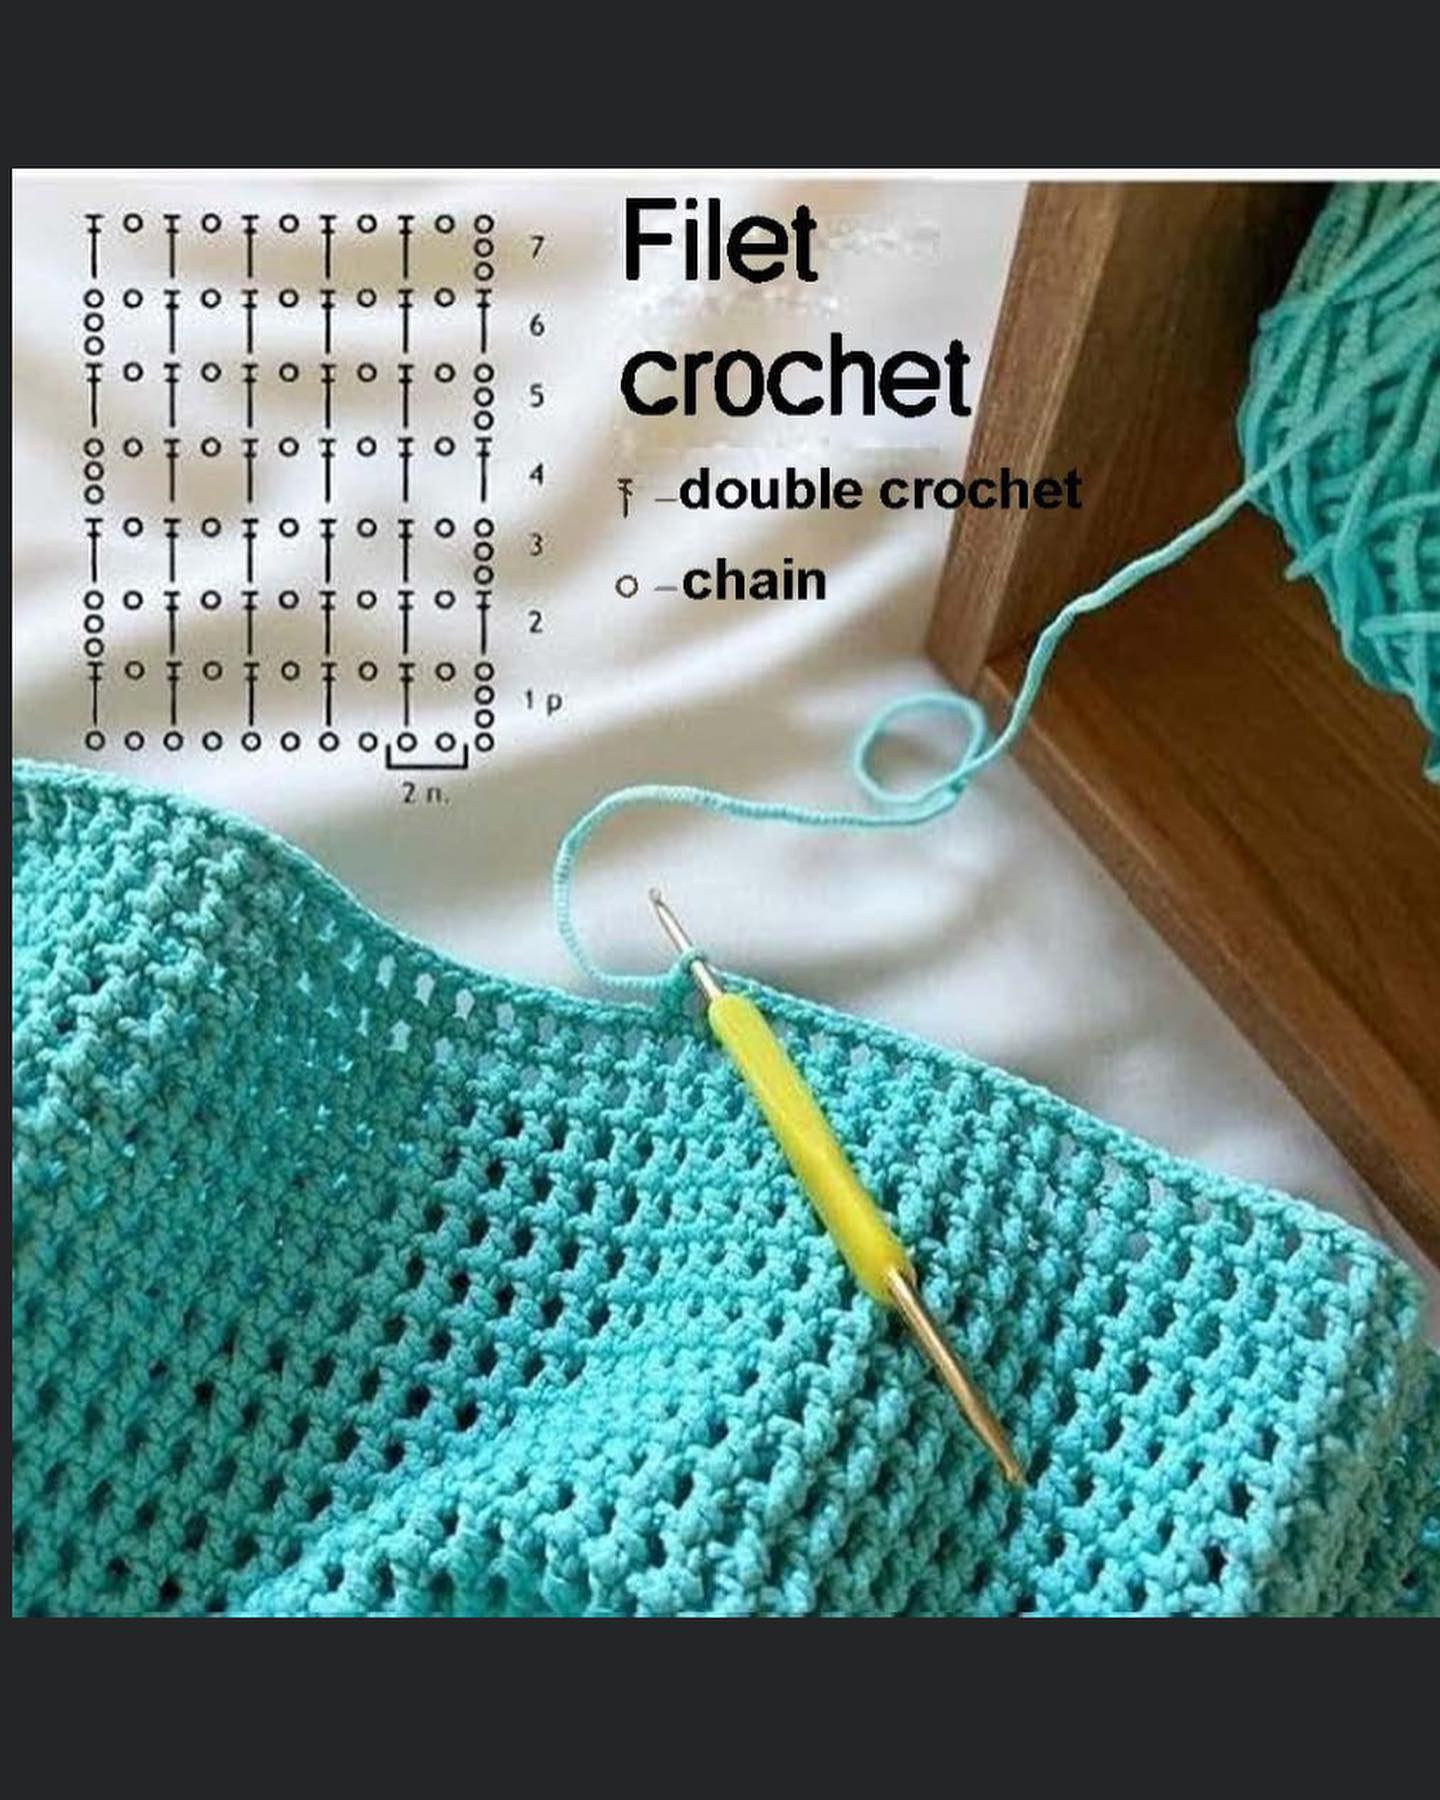 oval crochet pattern